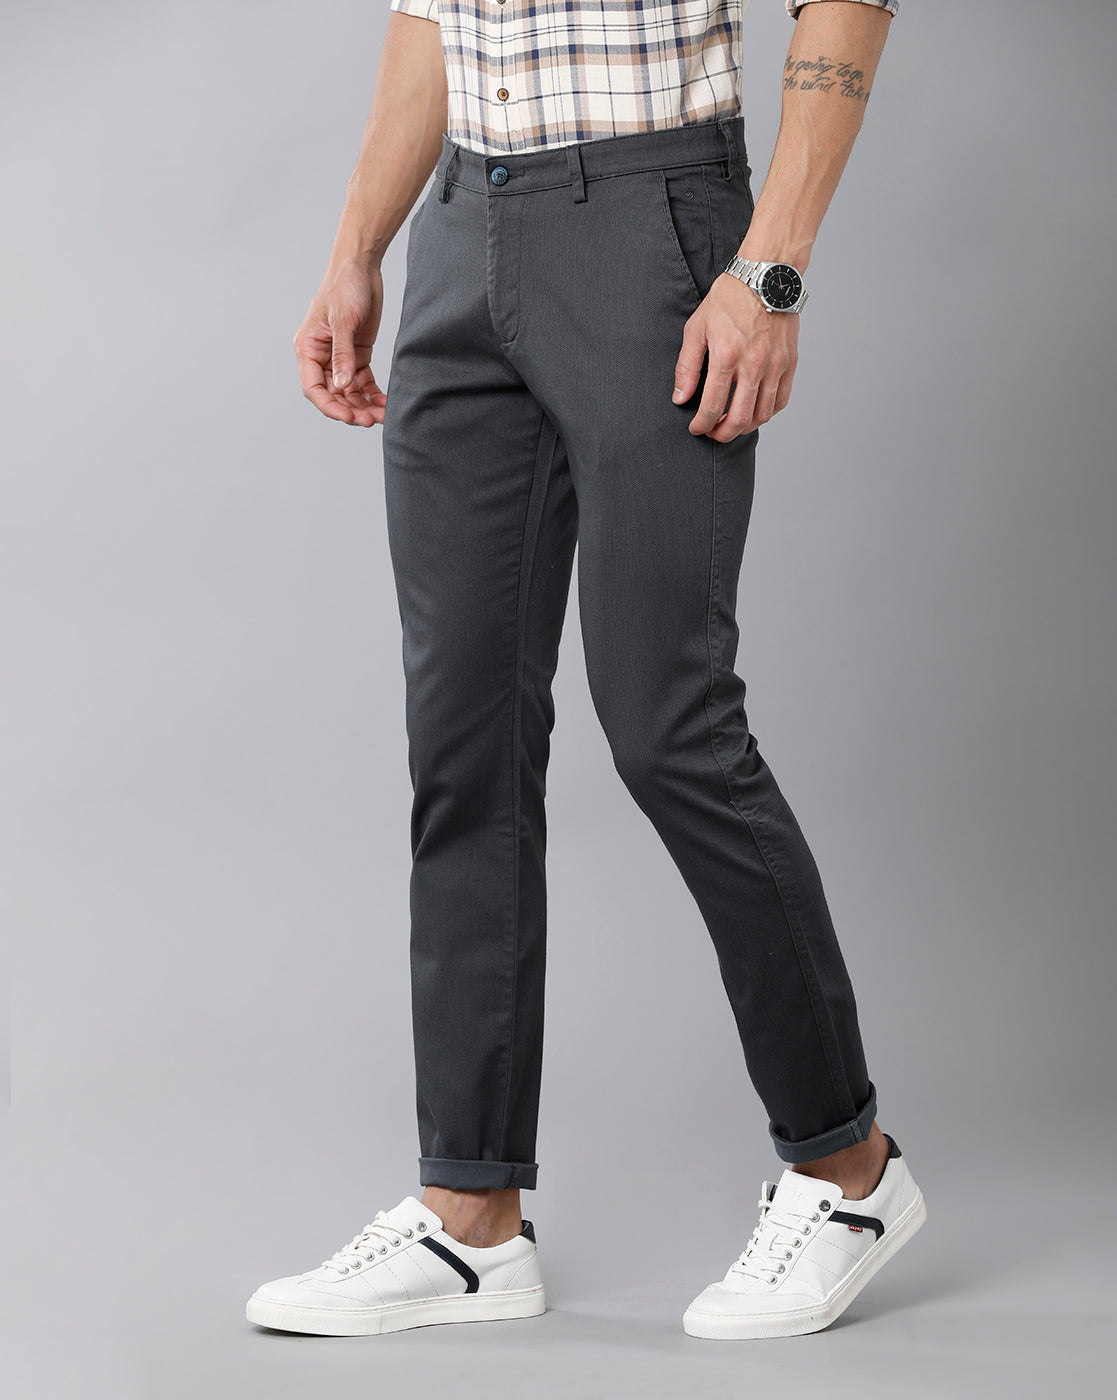 Jeans & Pants | Pure Cotton Trouser Grey Colour | Freeup